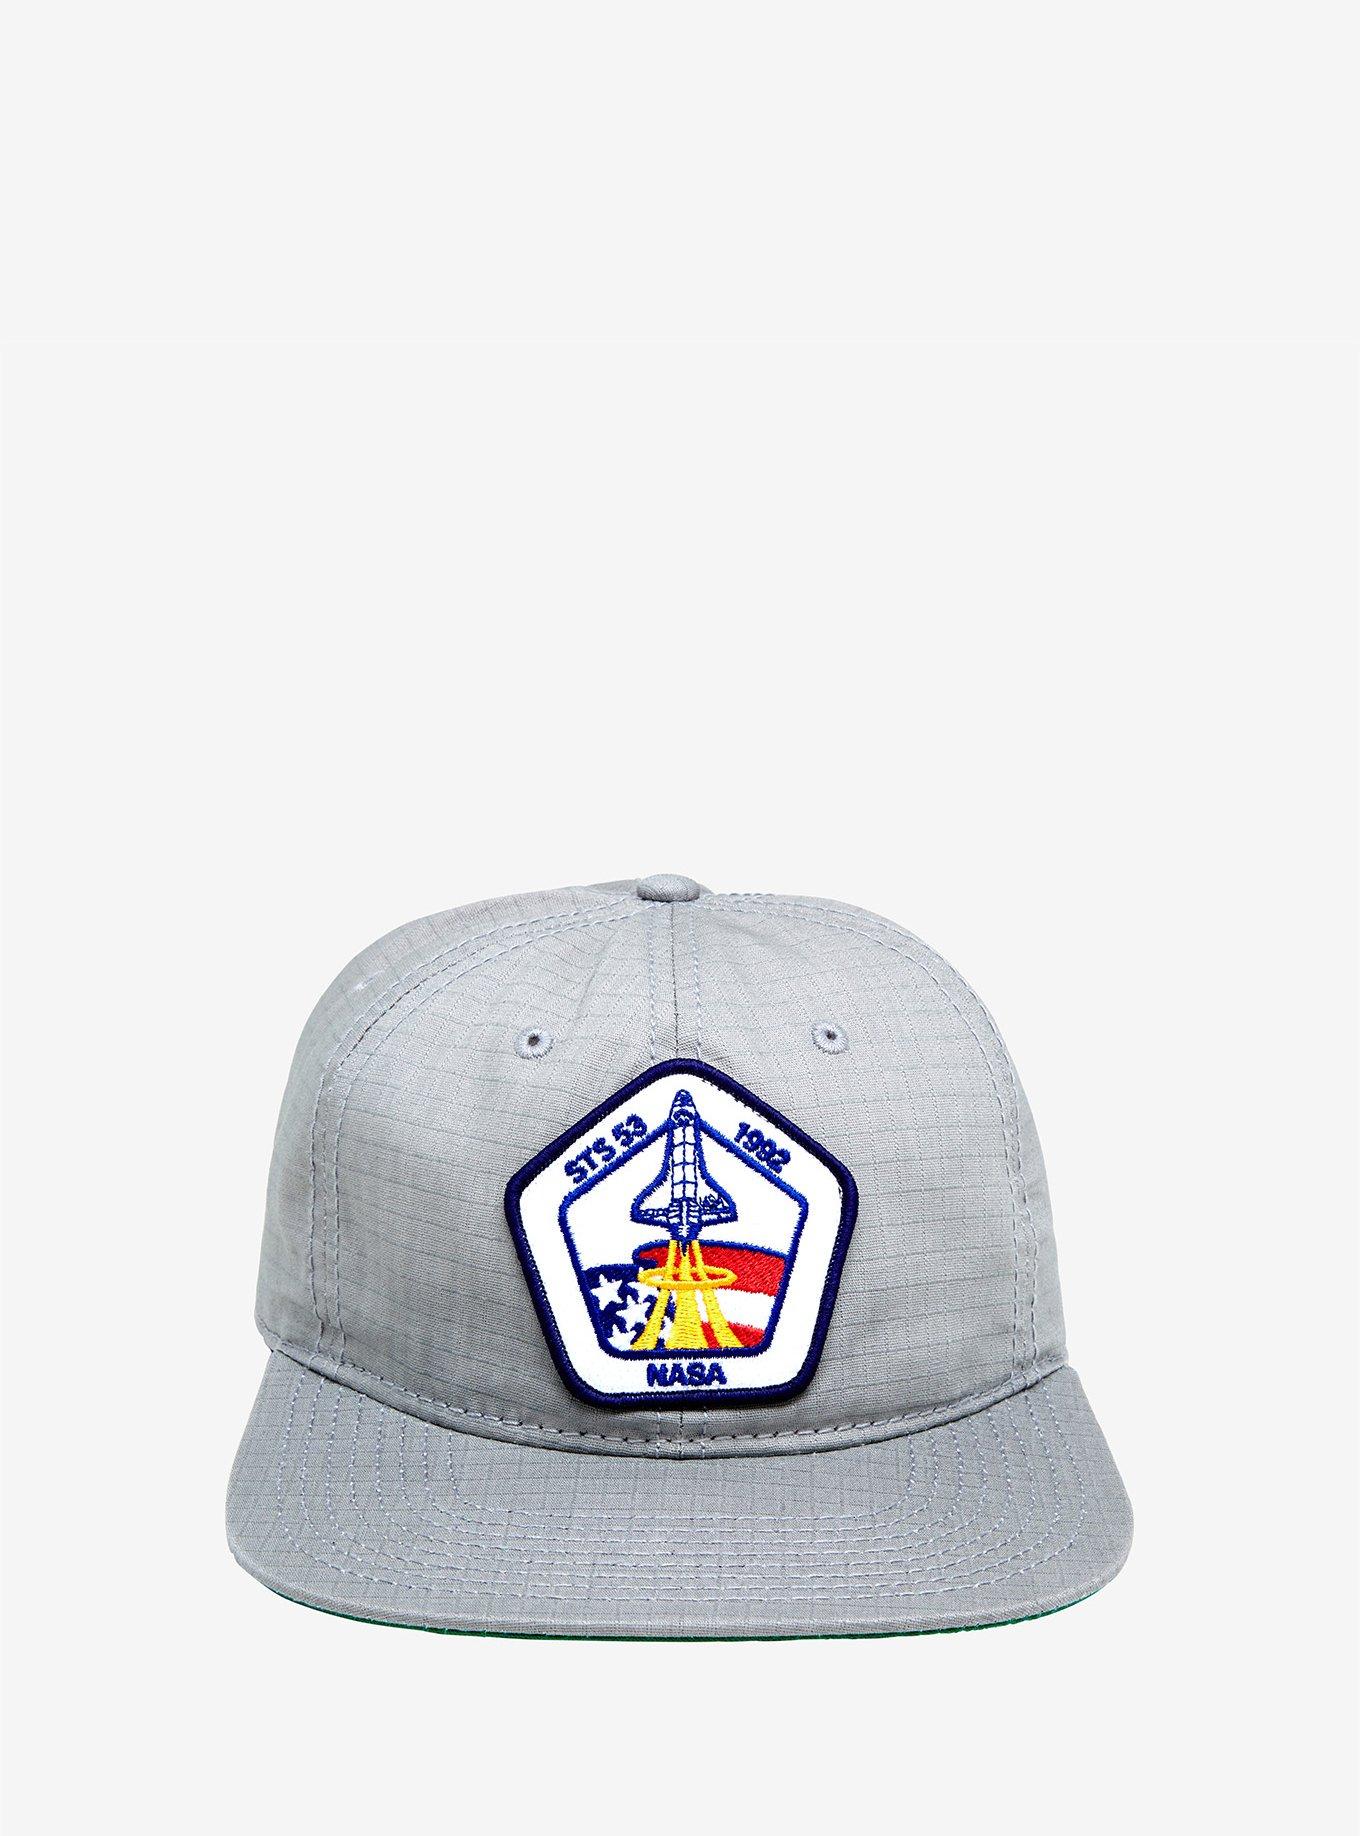 NASA Grey Snapback Hat, , alternate